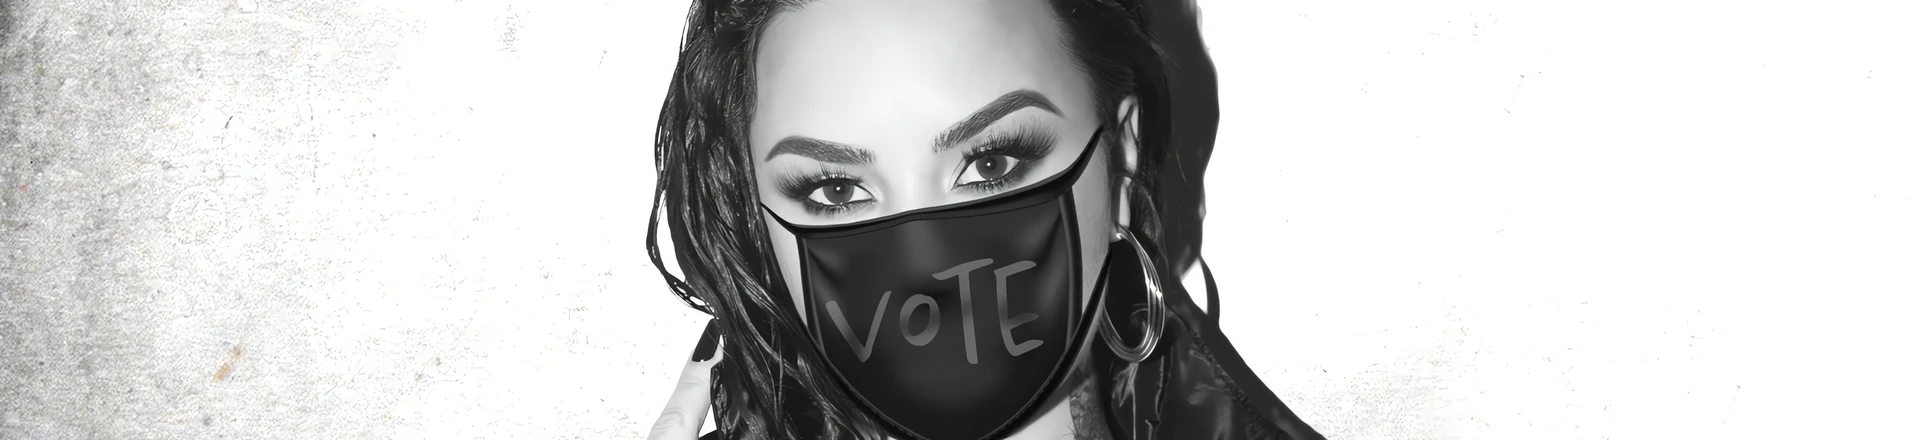 Demi Lovato mobilizuje do głosowania wspólnie z bratem Billie Eilish